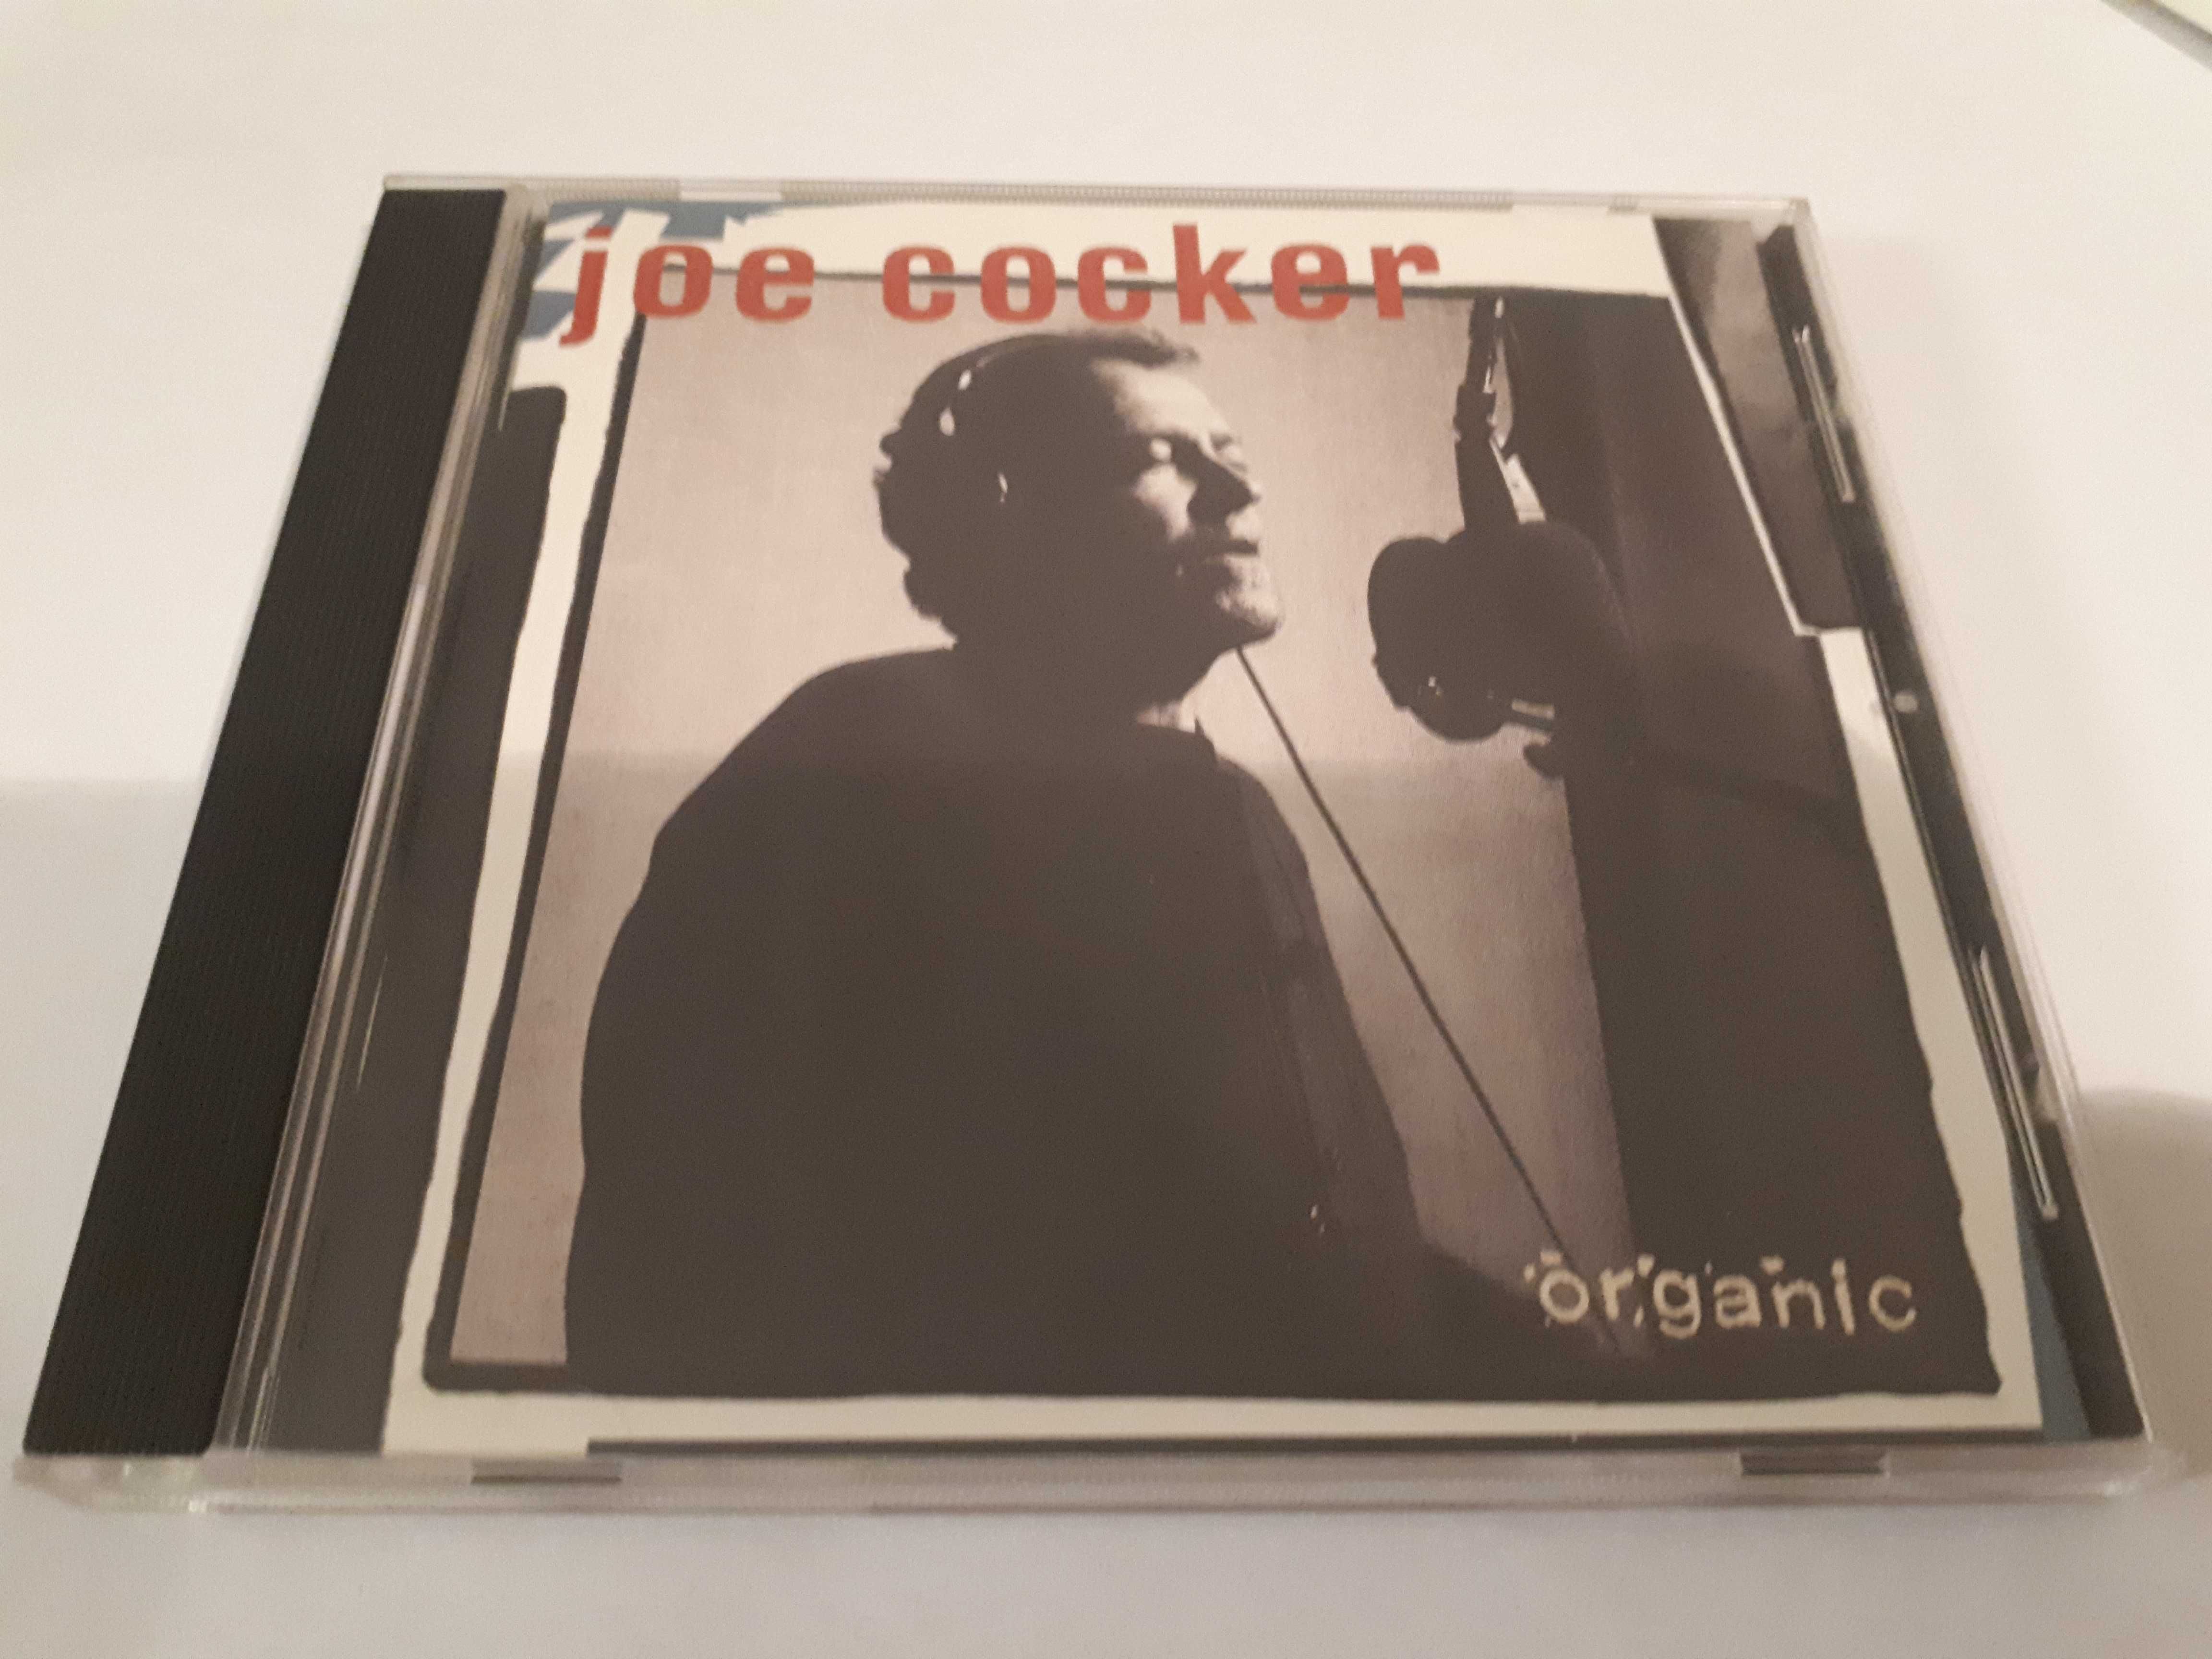 Joe Cocker "Organic" CD